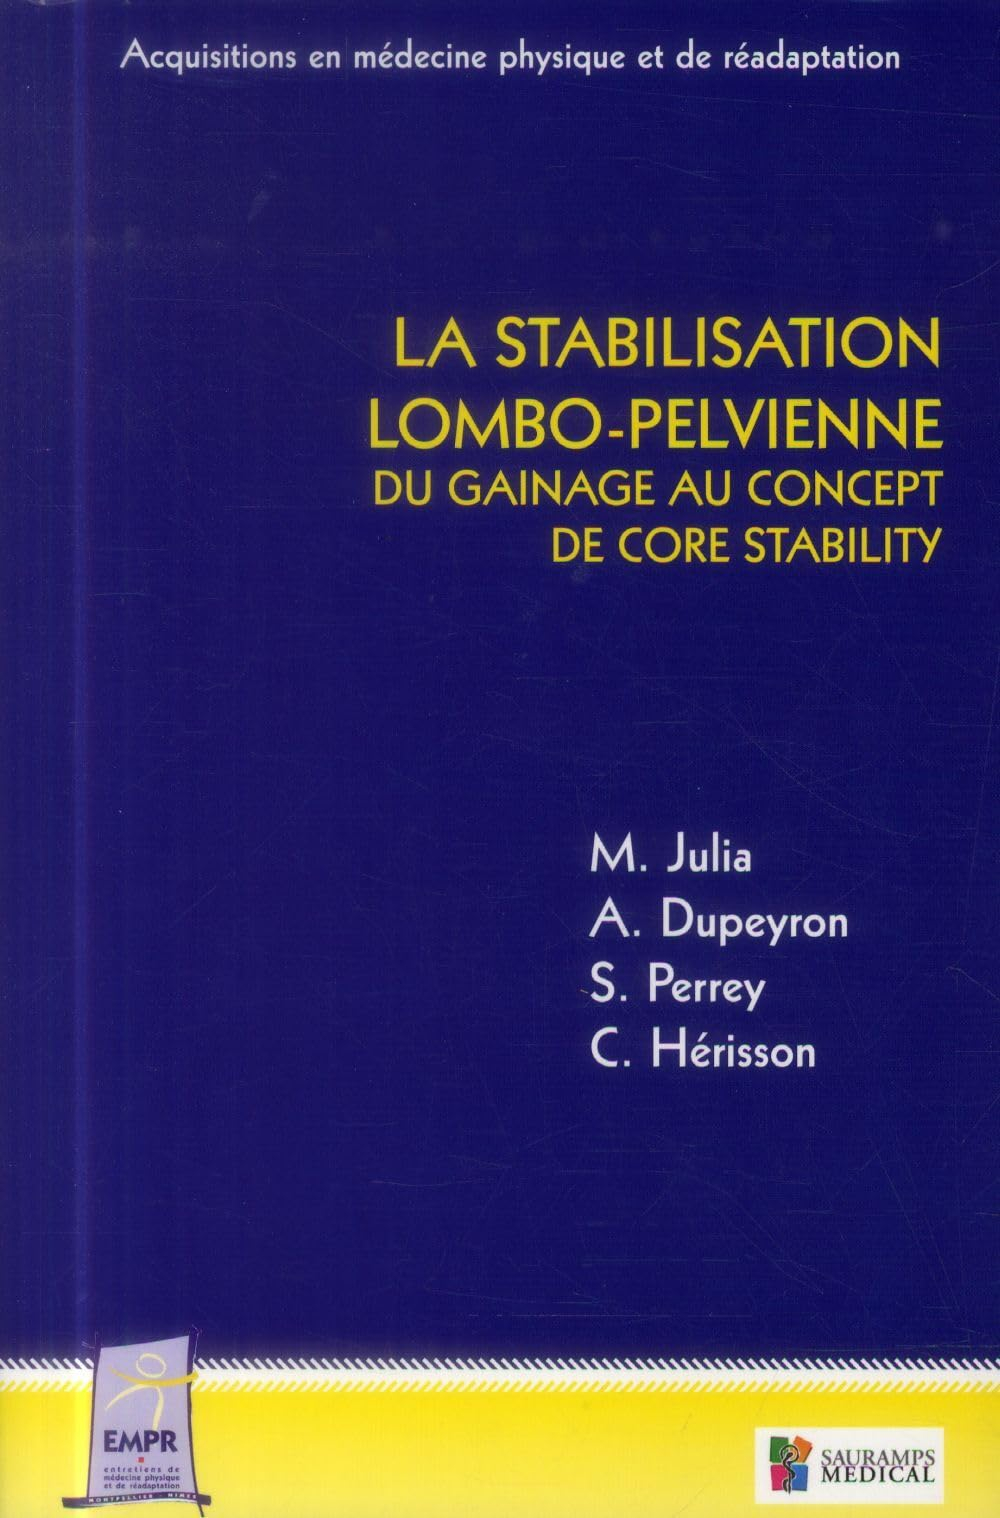 La stabilisation lombo-pelvienne : du gainage au concept de core stability